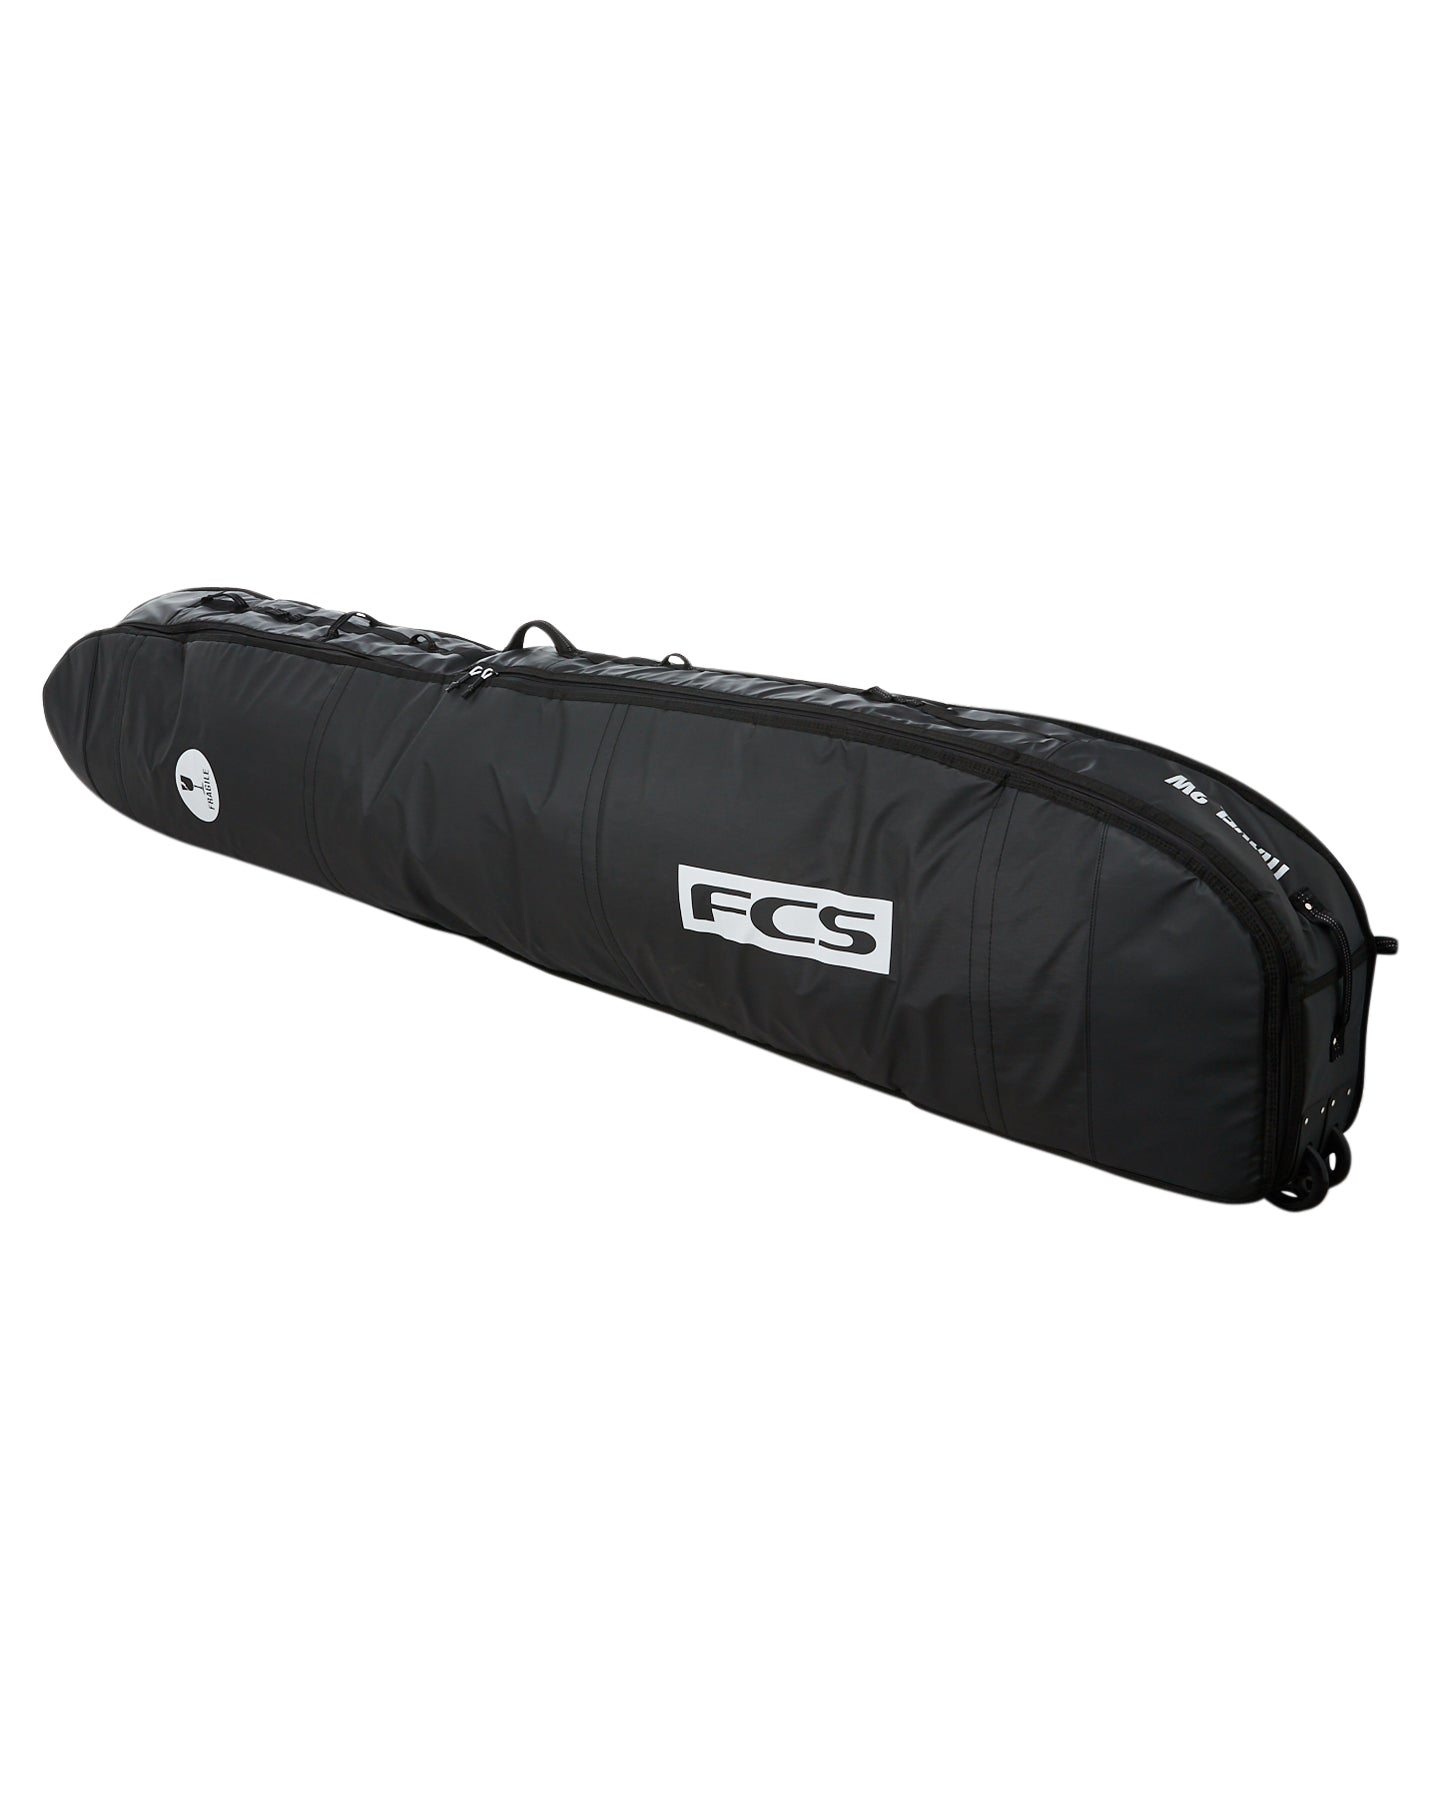 FCS Travel 2 Longboard Boardbag Black-Grey 9ft2in